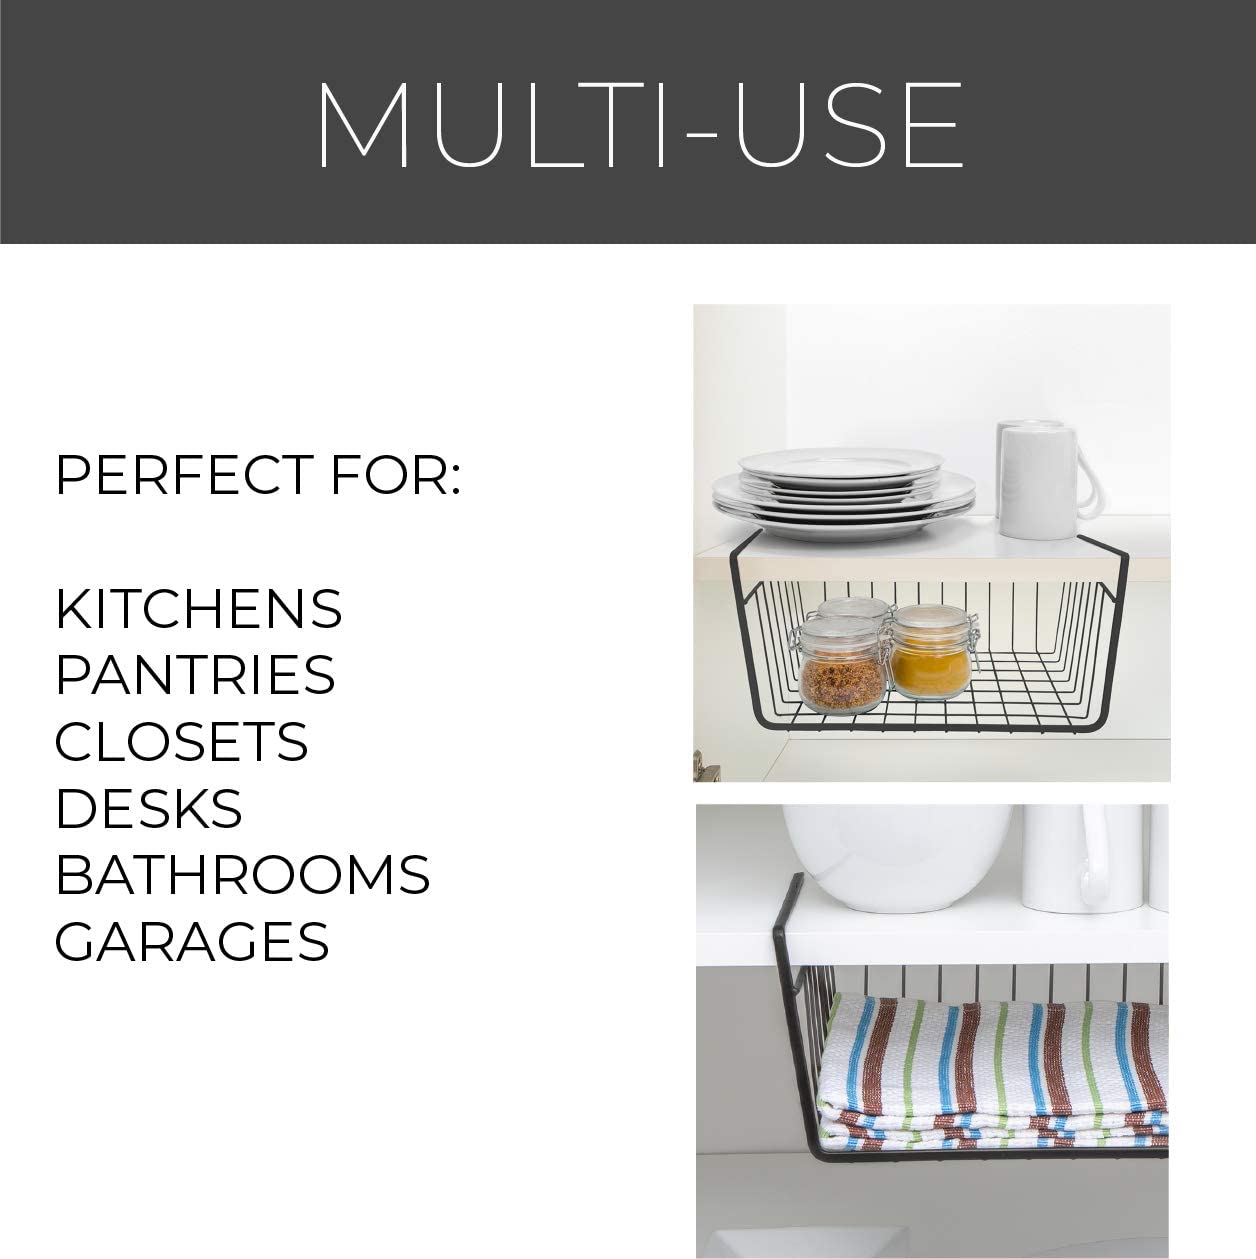 https://www.shopsmartdesign.com/cdn/shop/products/small-undershelf-storage-basket-smart-design-kitchen-8257188-incrementing-number-234268.jpg?v=1679337008